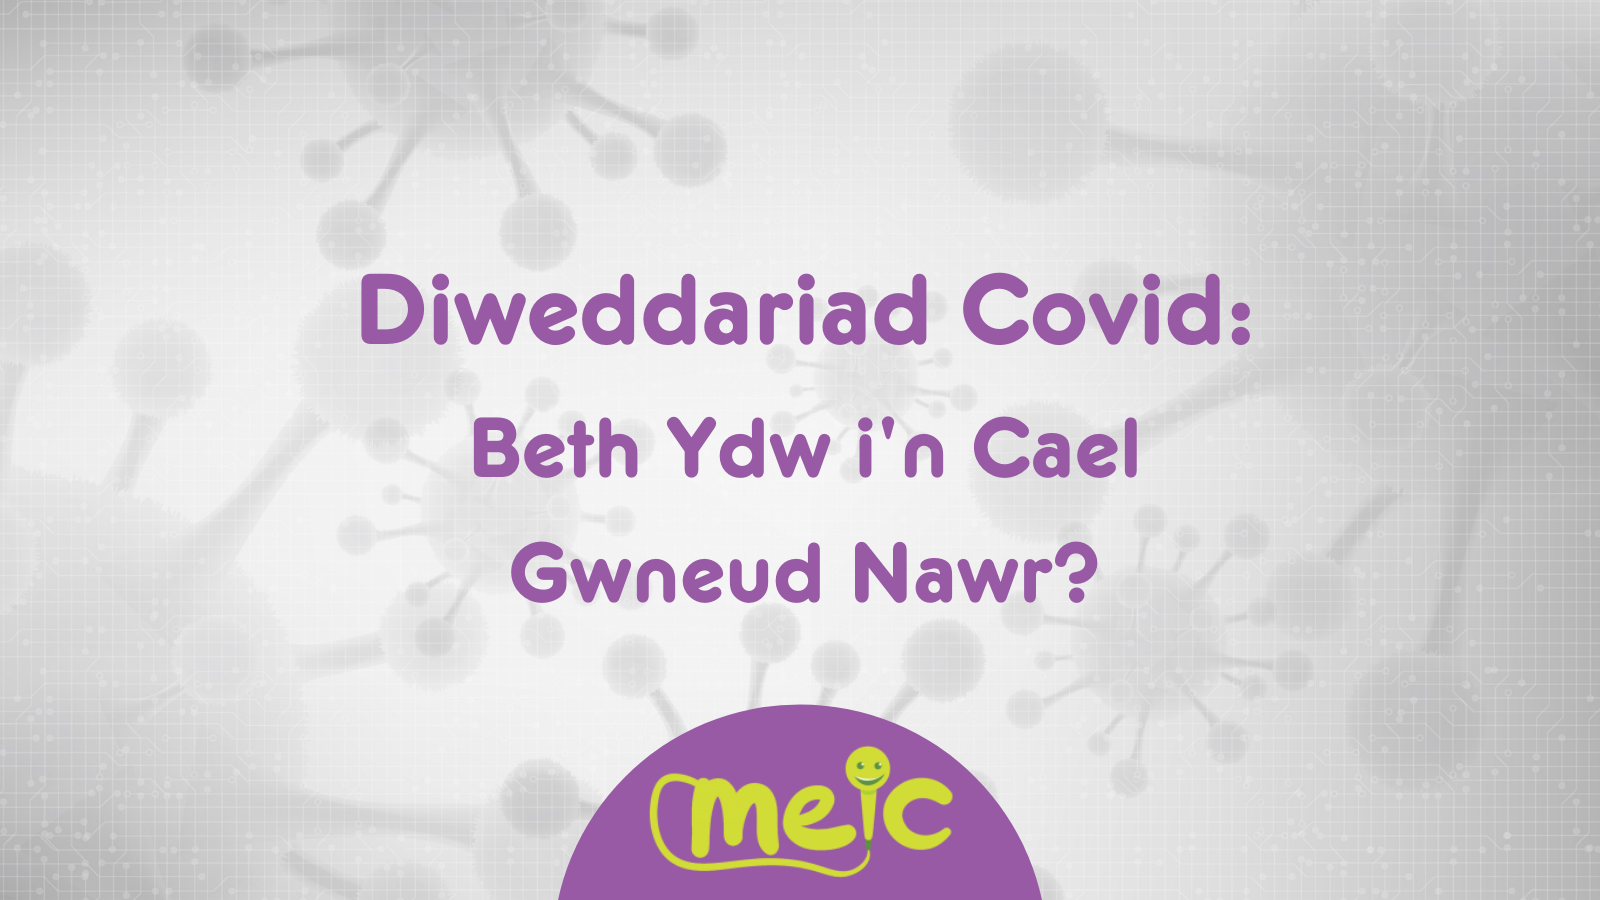 Diweddariad Covid – Beth Ydw i’n Cael Gwneud Nawr?